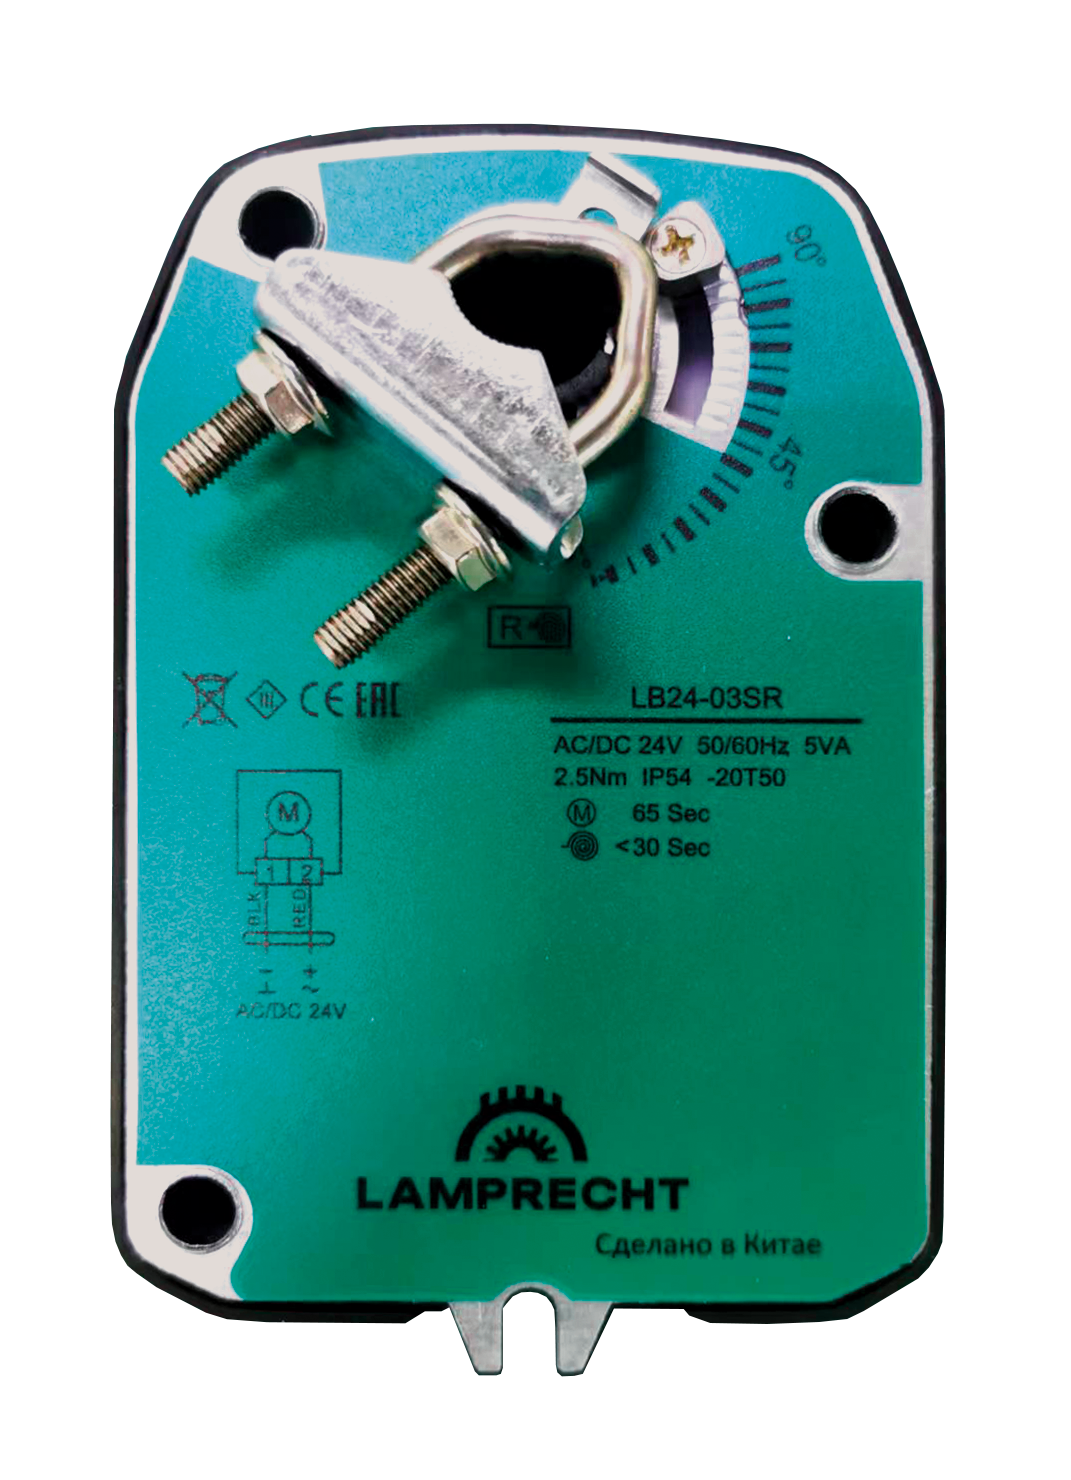 Электропривод Lamprecht LB24-03SR-U с моментом вращения 3 Нм с возвратной пружиной